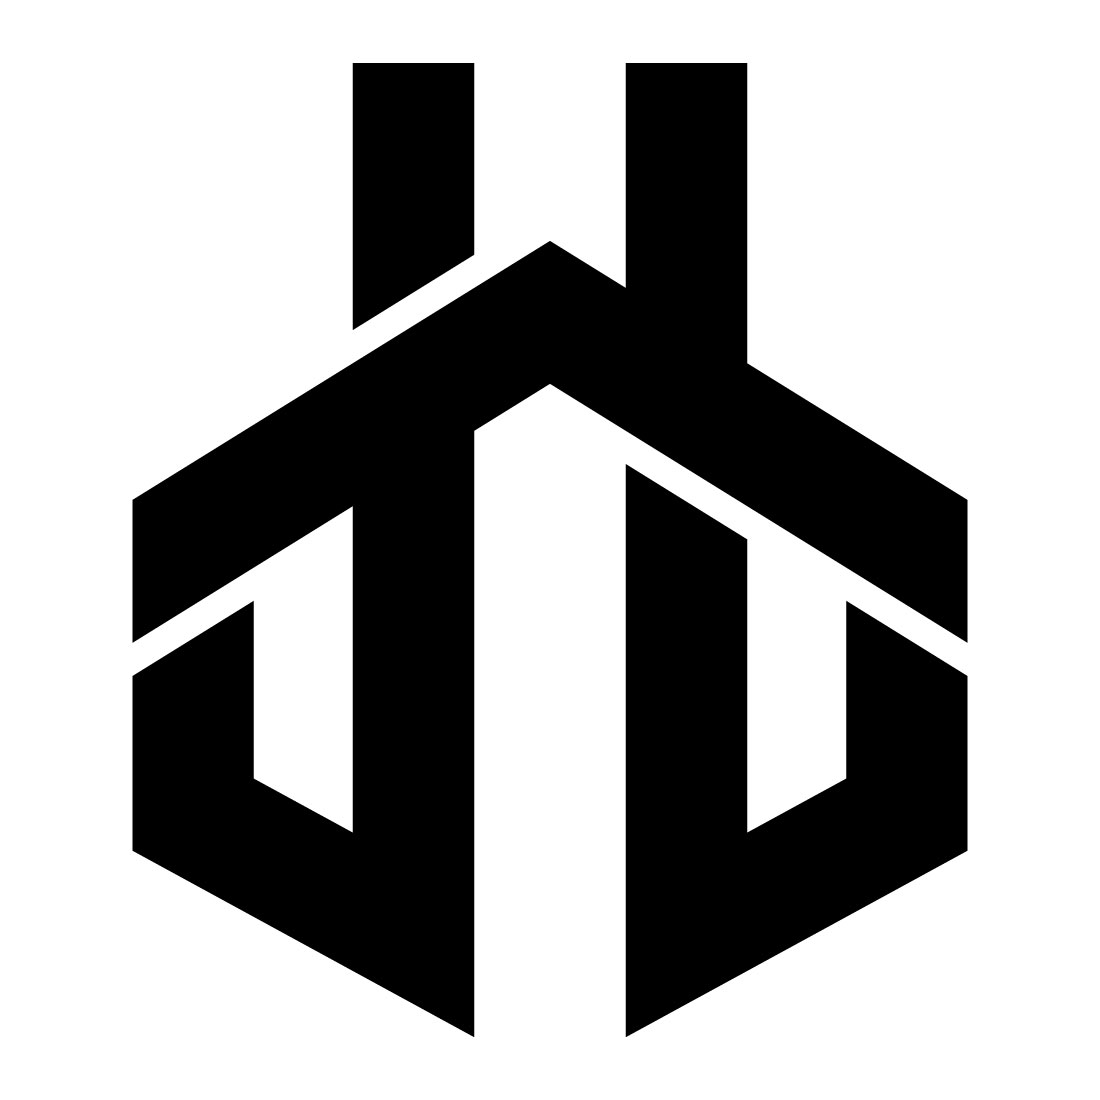 TT Monogram Letter Logo Vector cover image.